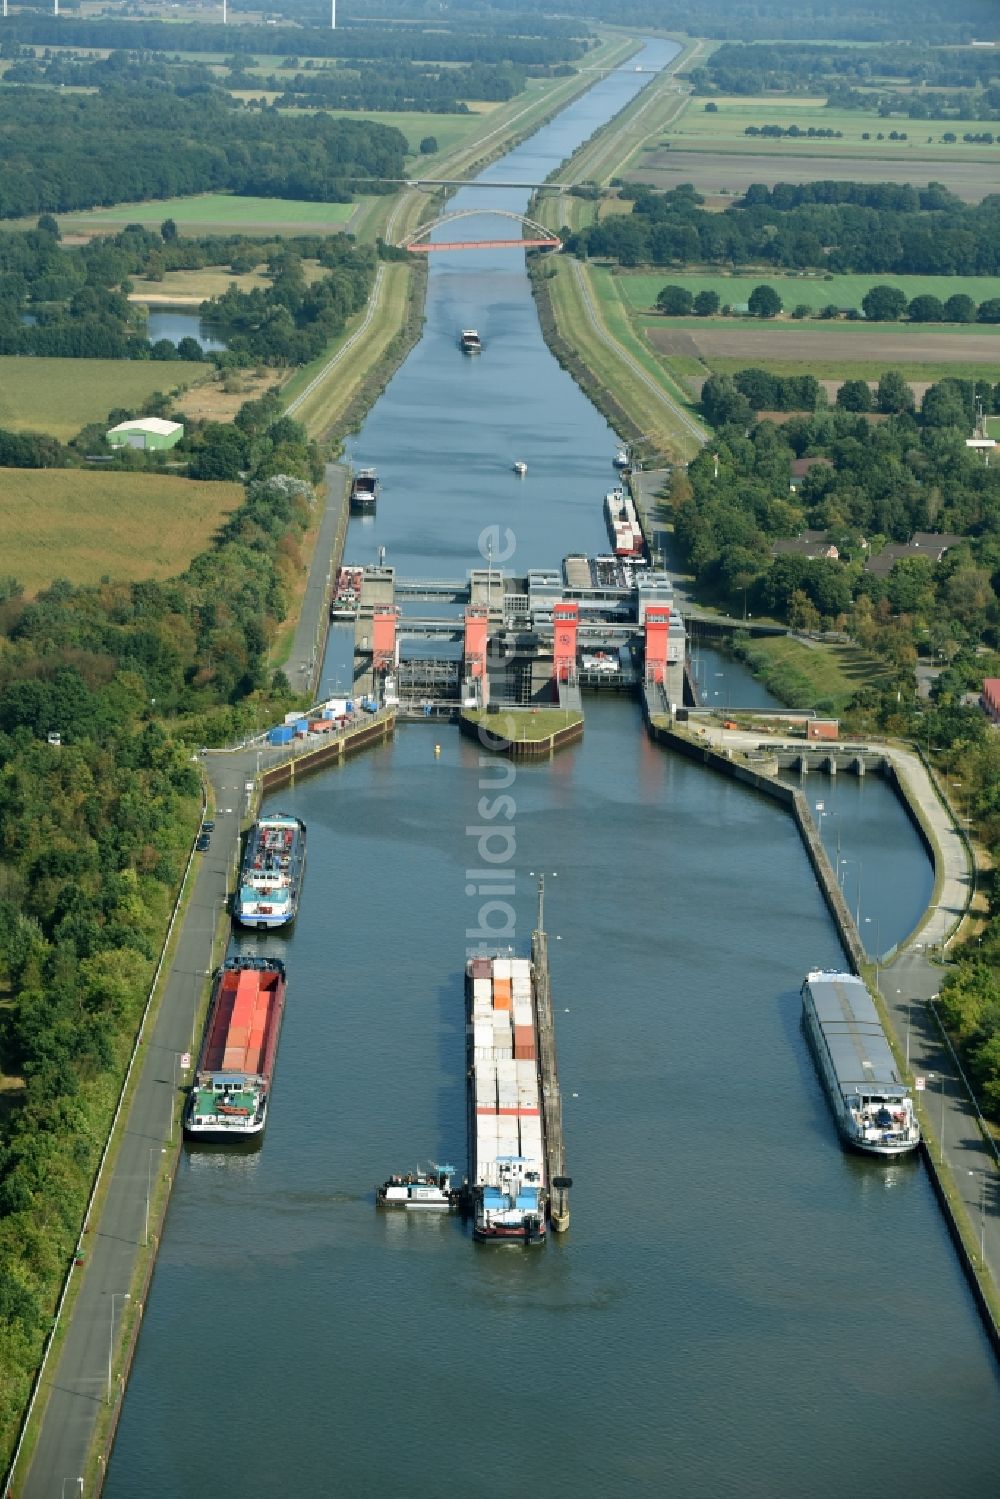 Scharnebeck von oben - Schiffshebewerk und Schleusenanlagen am Ufer der Wasserstraße des Elbe-Seitenkanal in Scharnebeck im Bundesland Niedersachsen, Deutschland